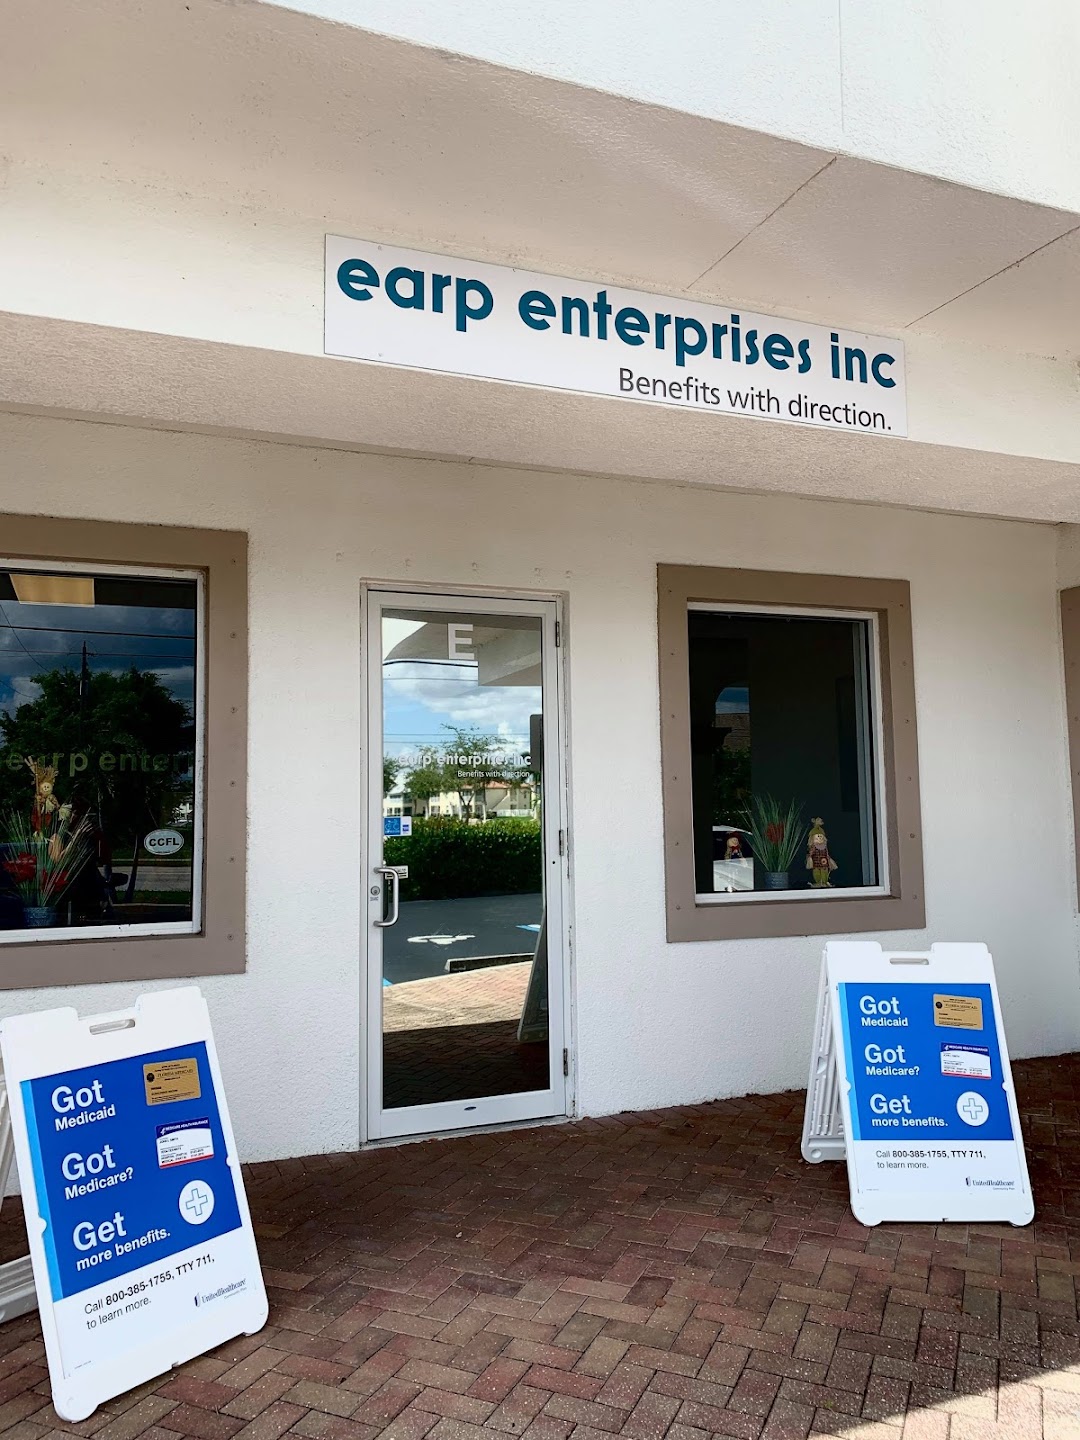 Earp Enterprises Inc